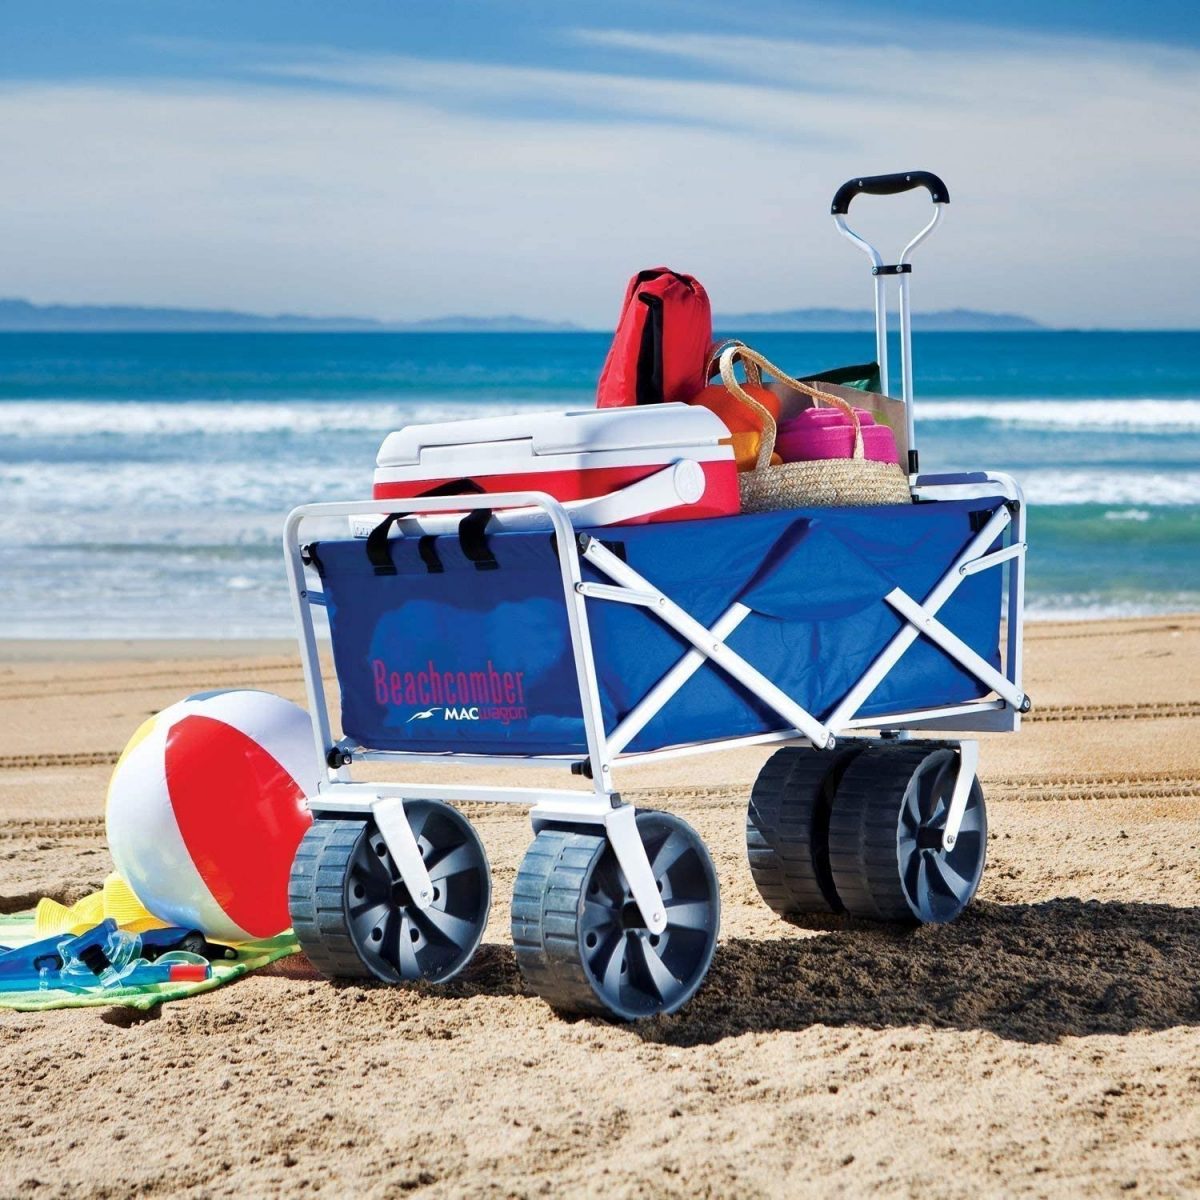 A wagon on the beach